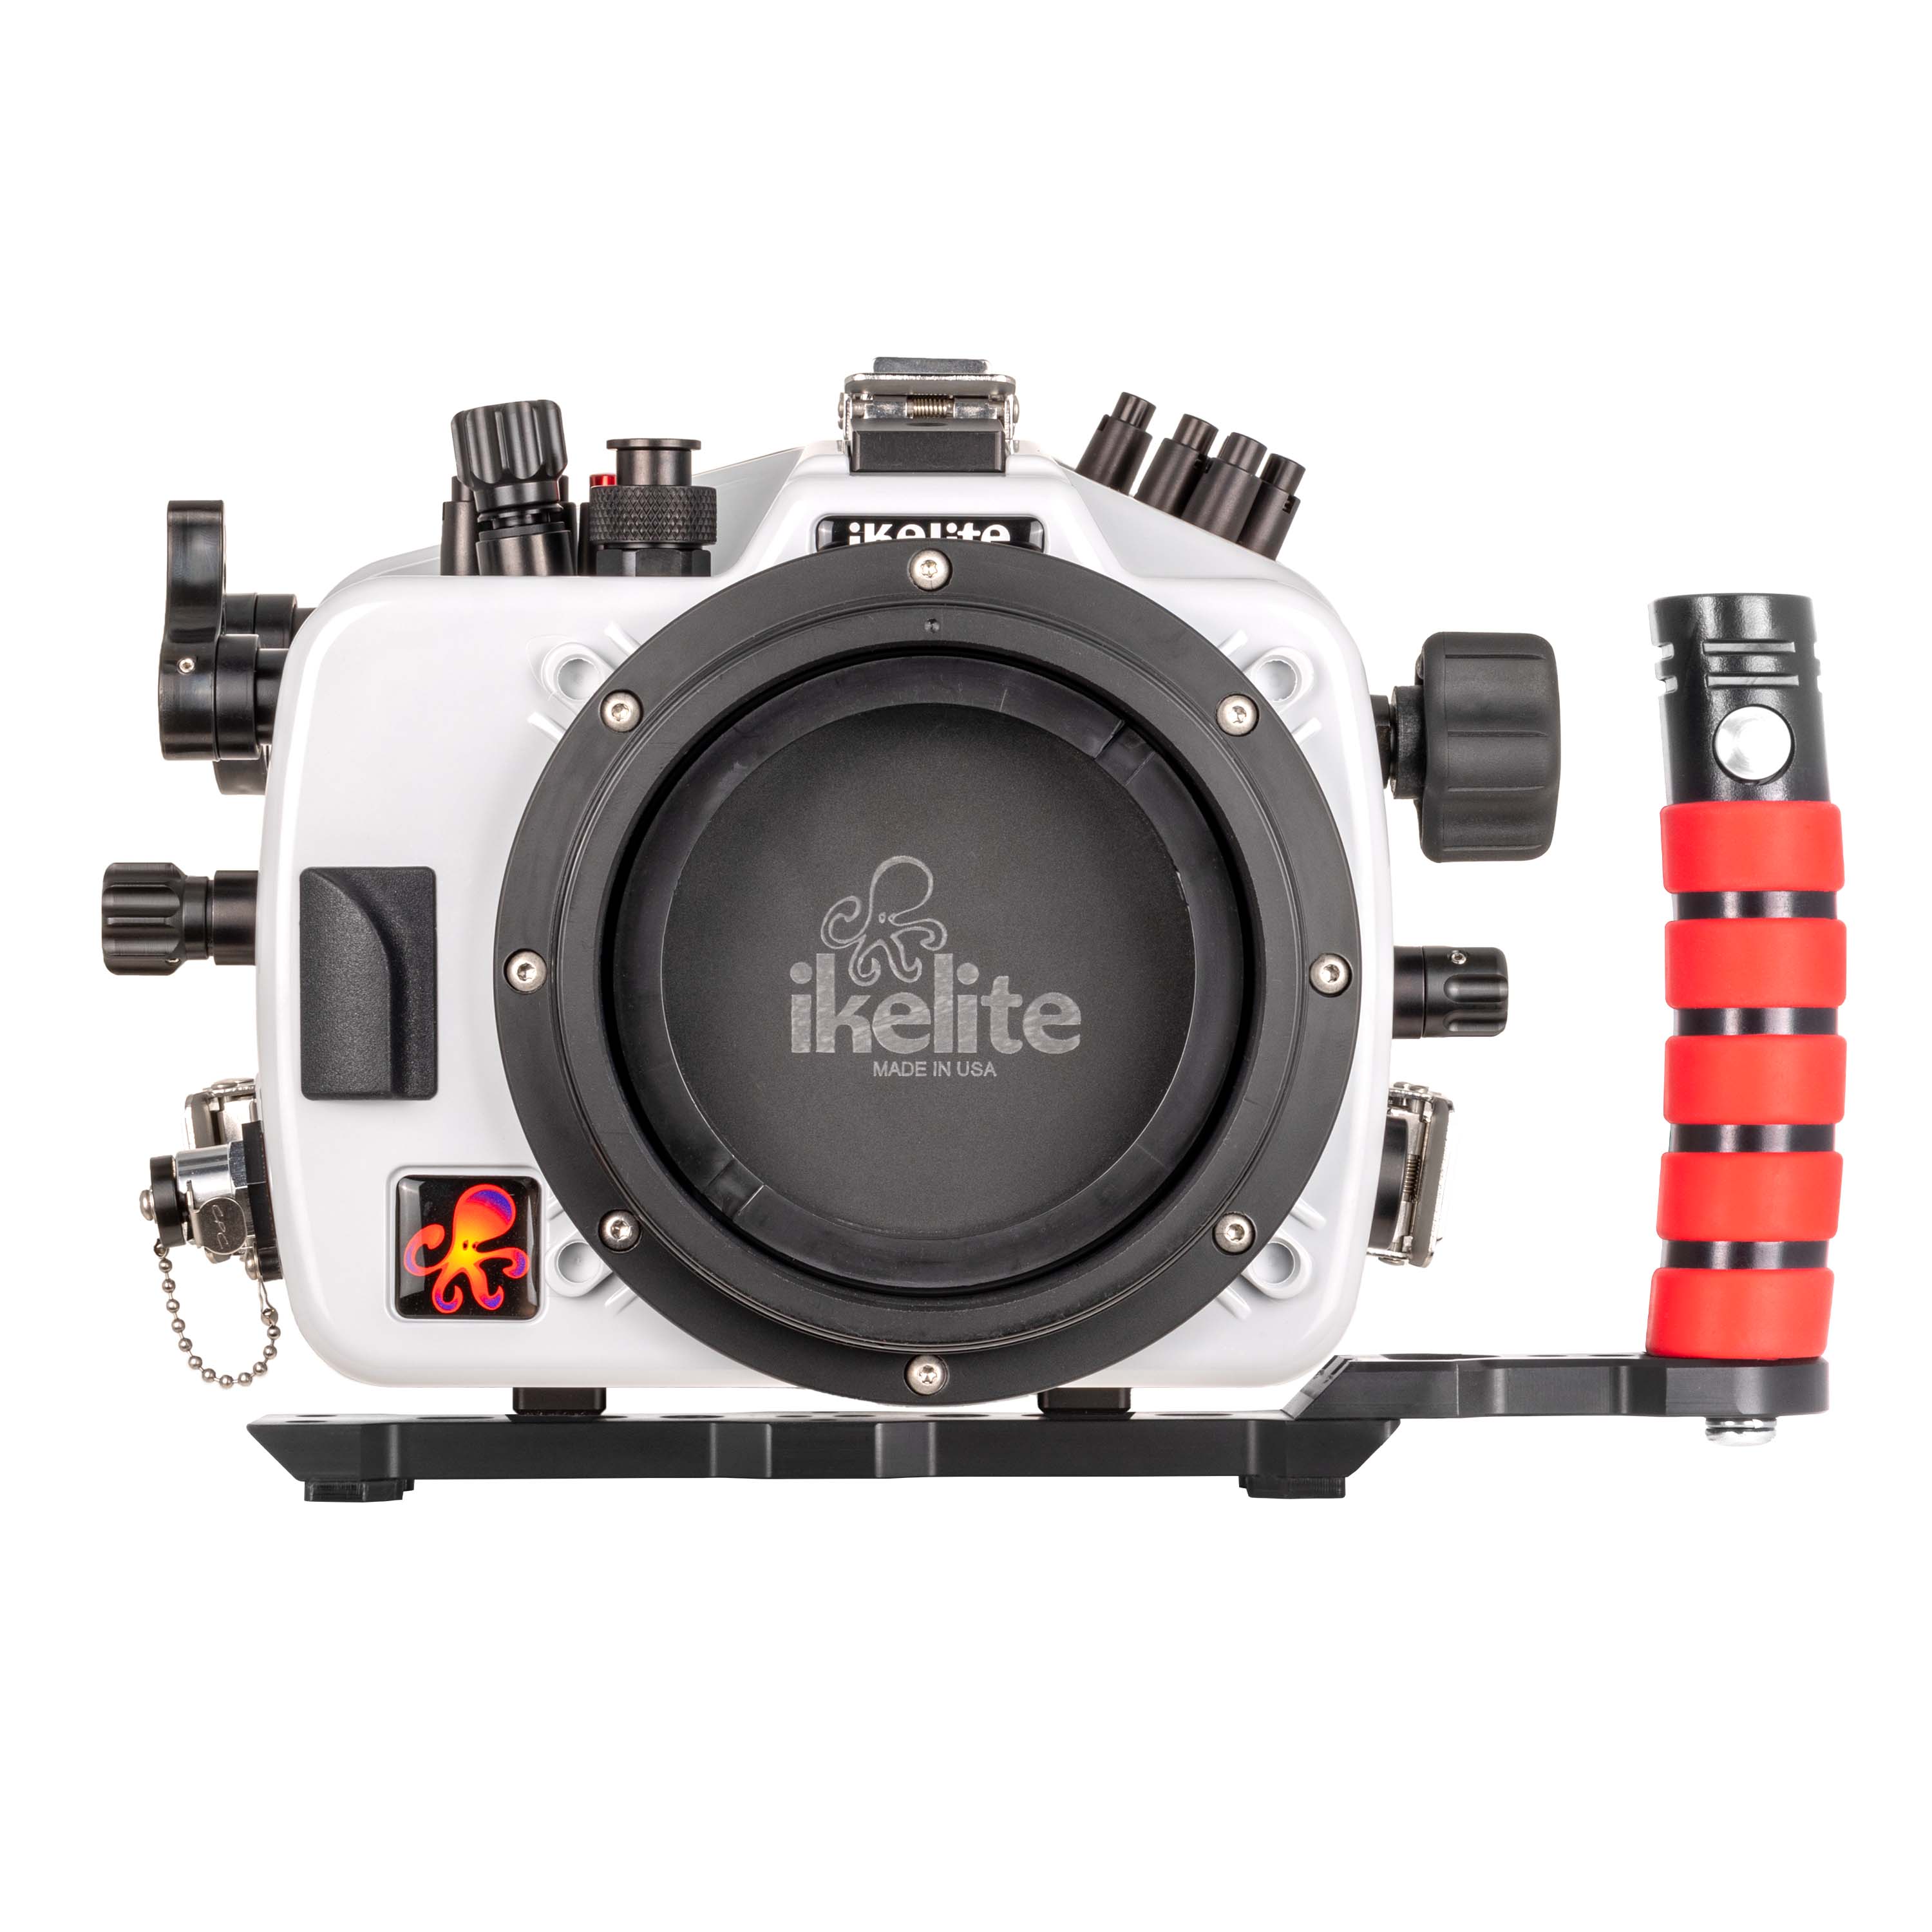 Ikelite 200DL Underwater Housing for Nikon Z8 Mirrorless Digital Cameras